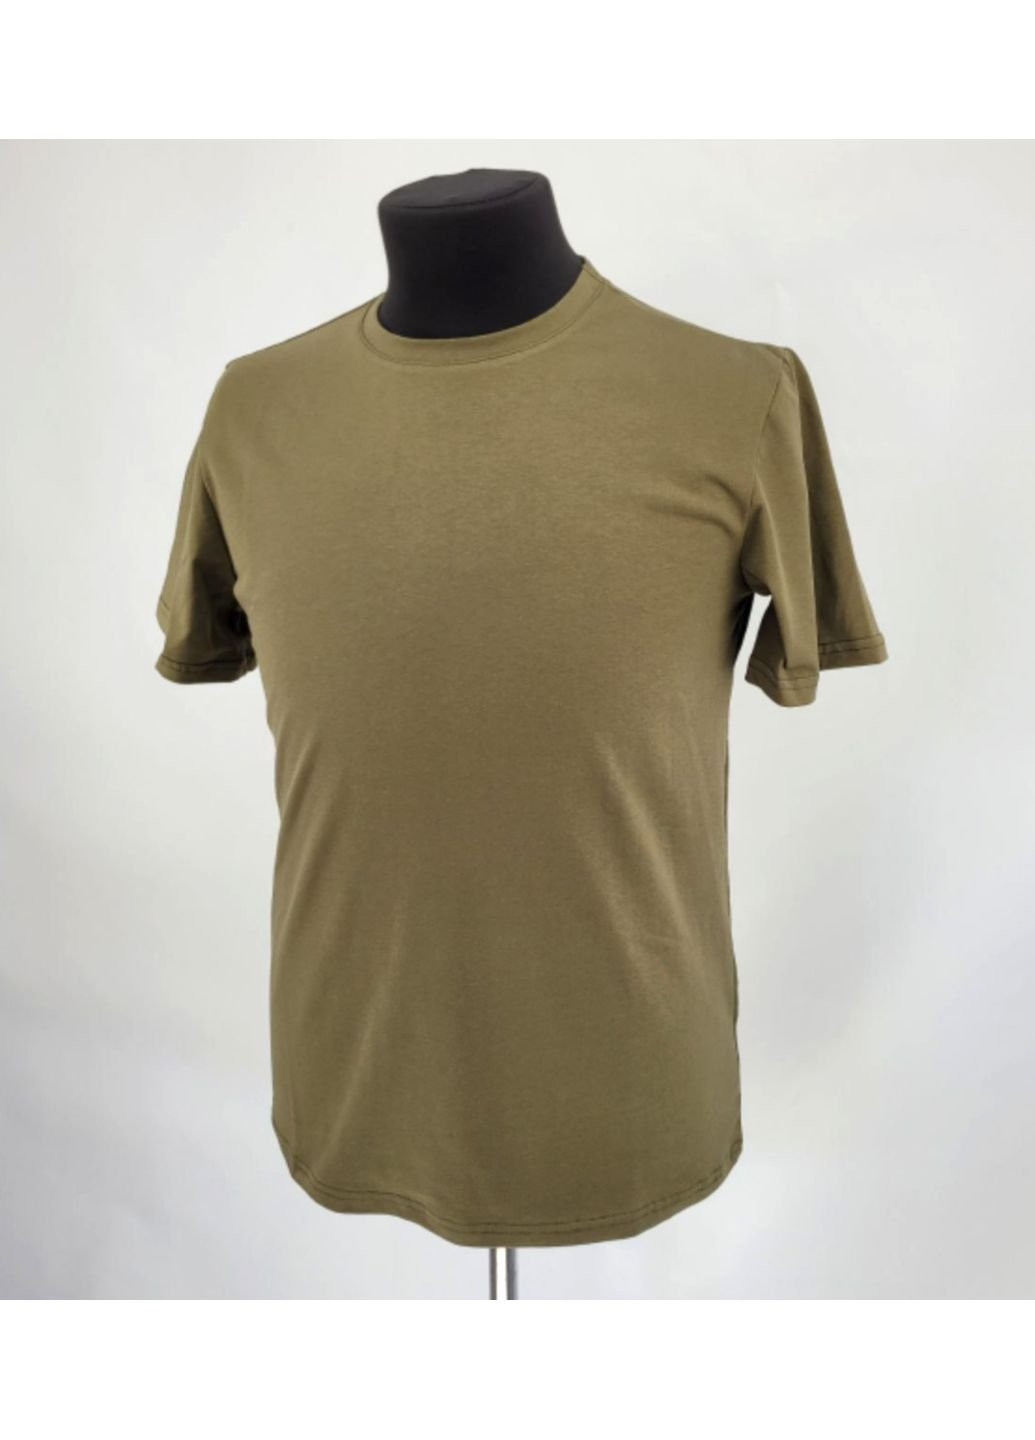 Хаки (оливковая) футболка мужская тактическая хлопок всу (зсу) 1061 7266 l хаки No Brand